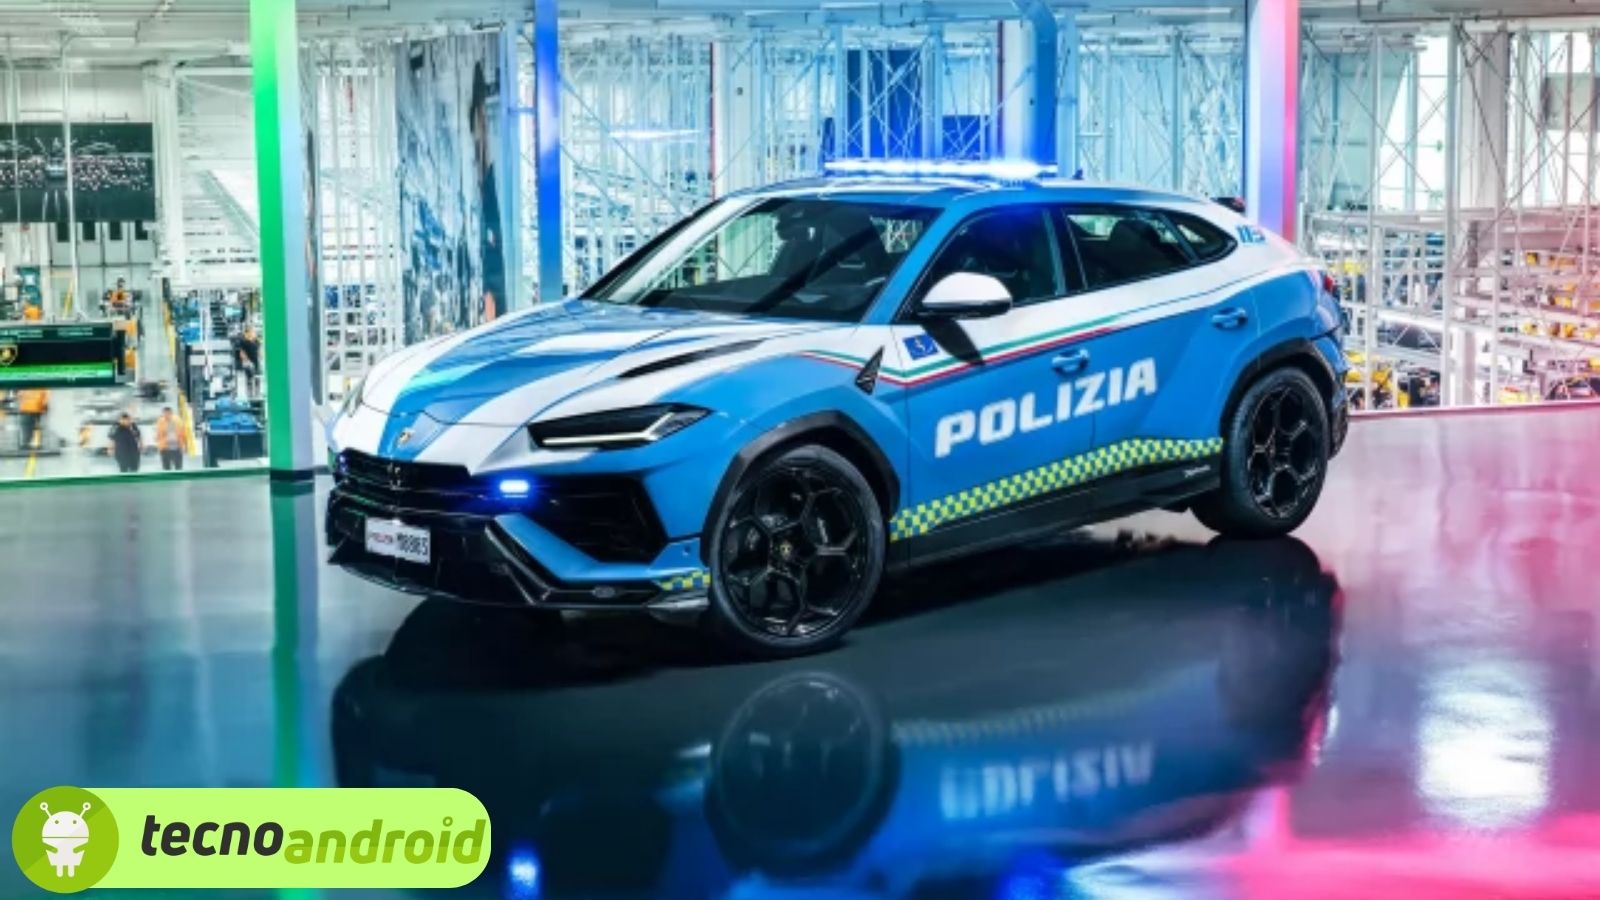 In arrivo la nuova Lamborghini Urus per la Polizia 